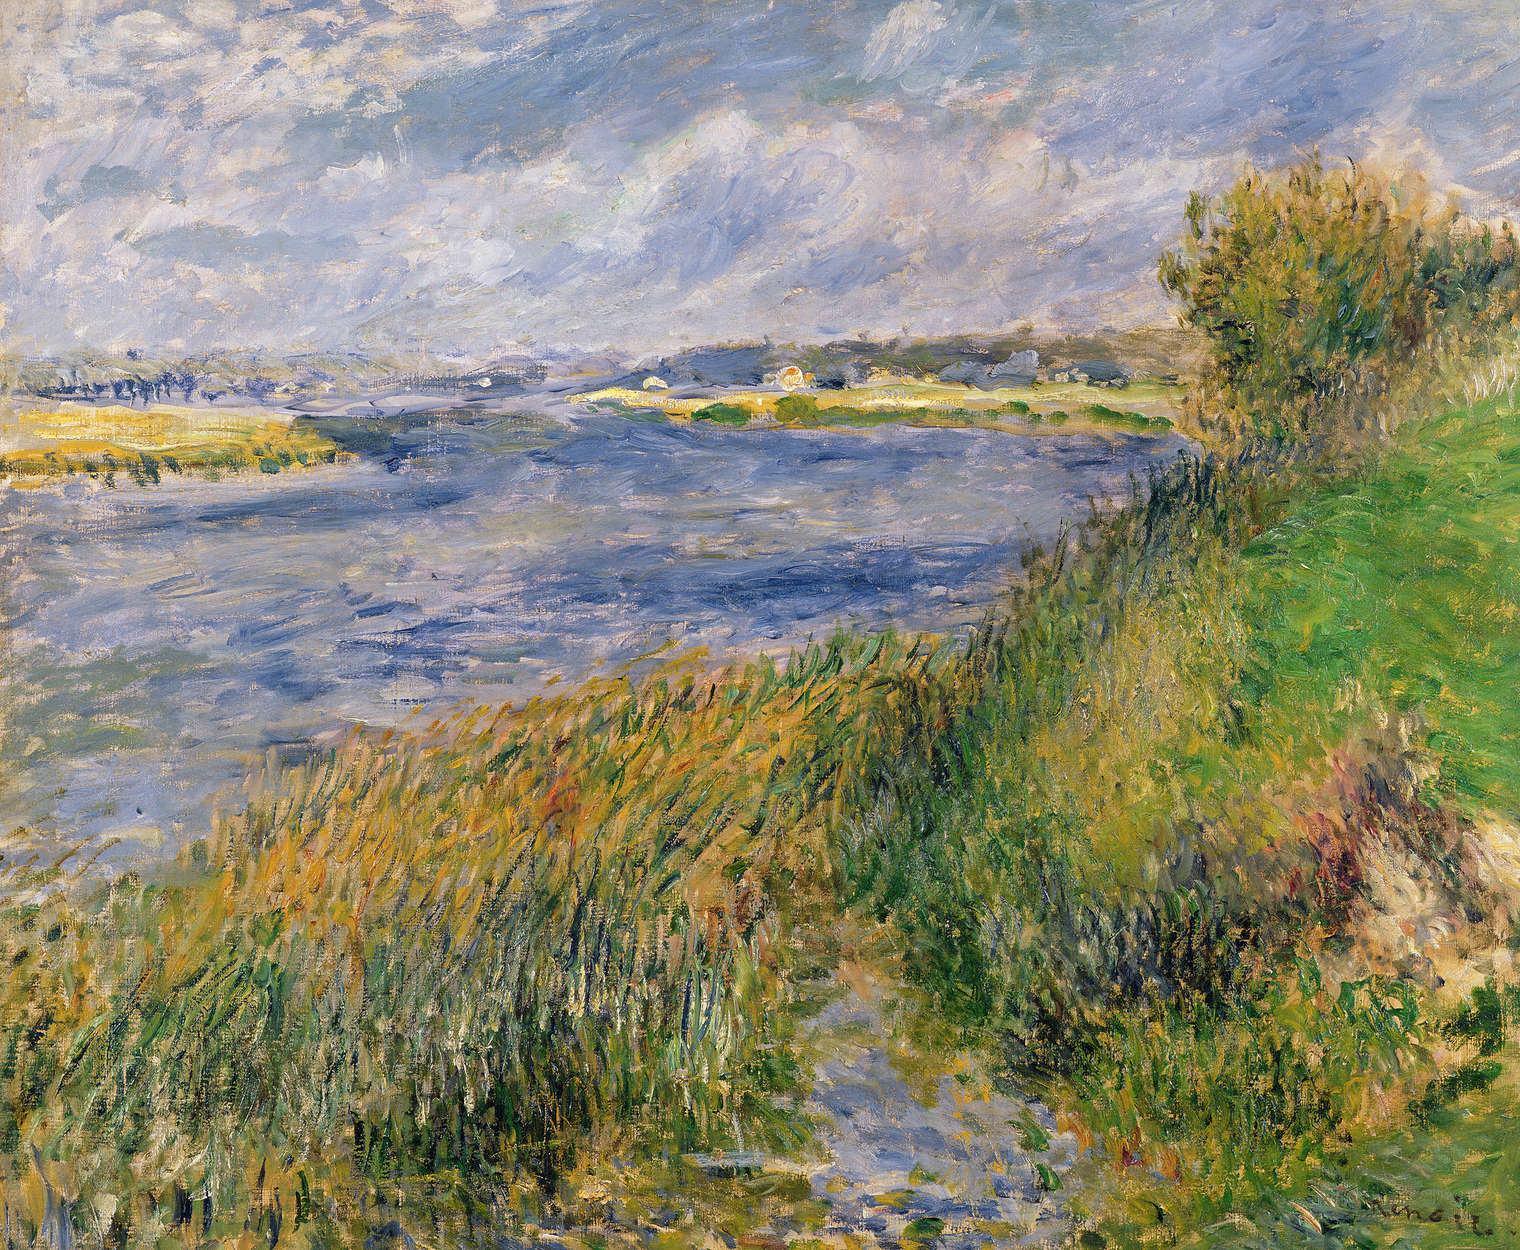             Muurschildering "De oevers van de Seine in Champrosay" door Pierre Auguste Renoir
        